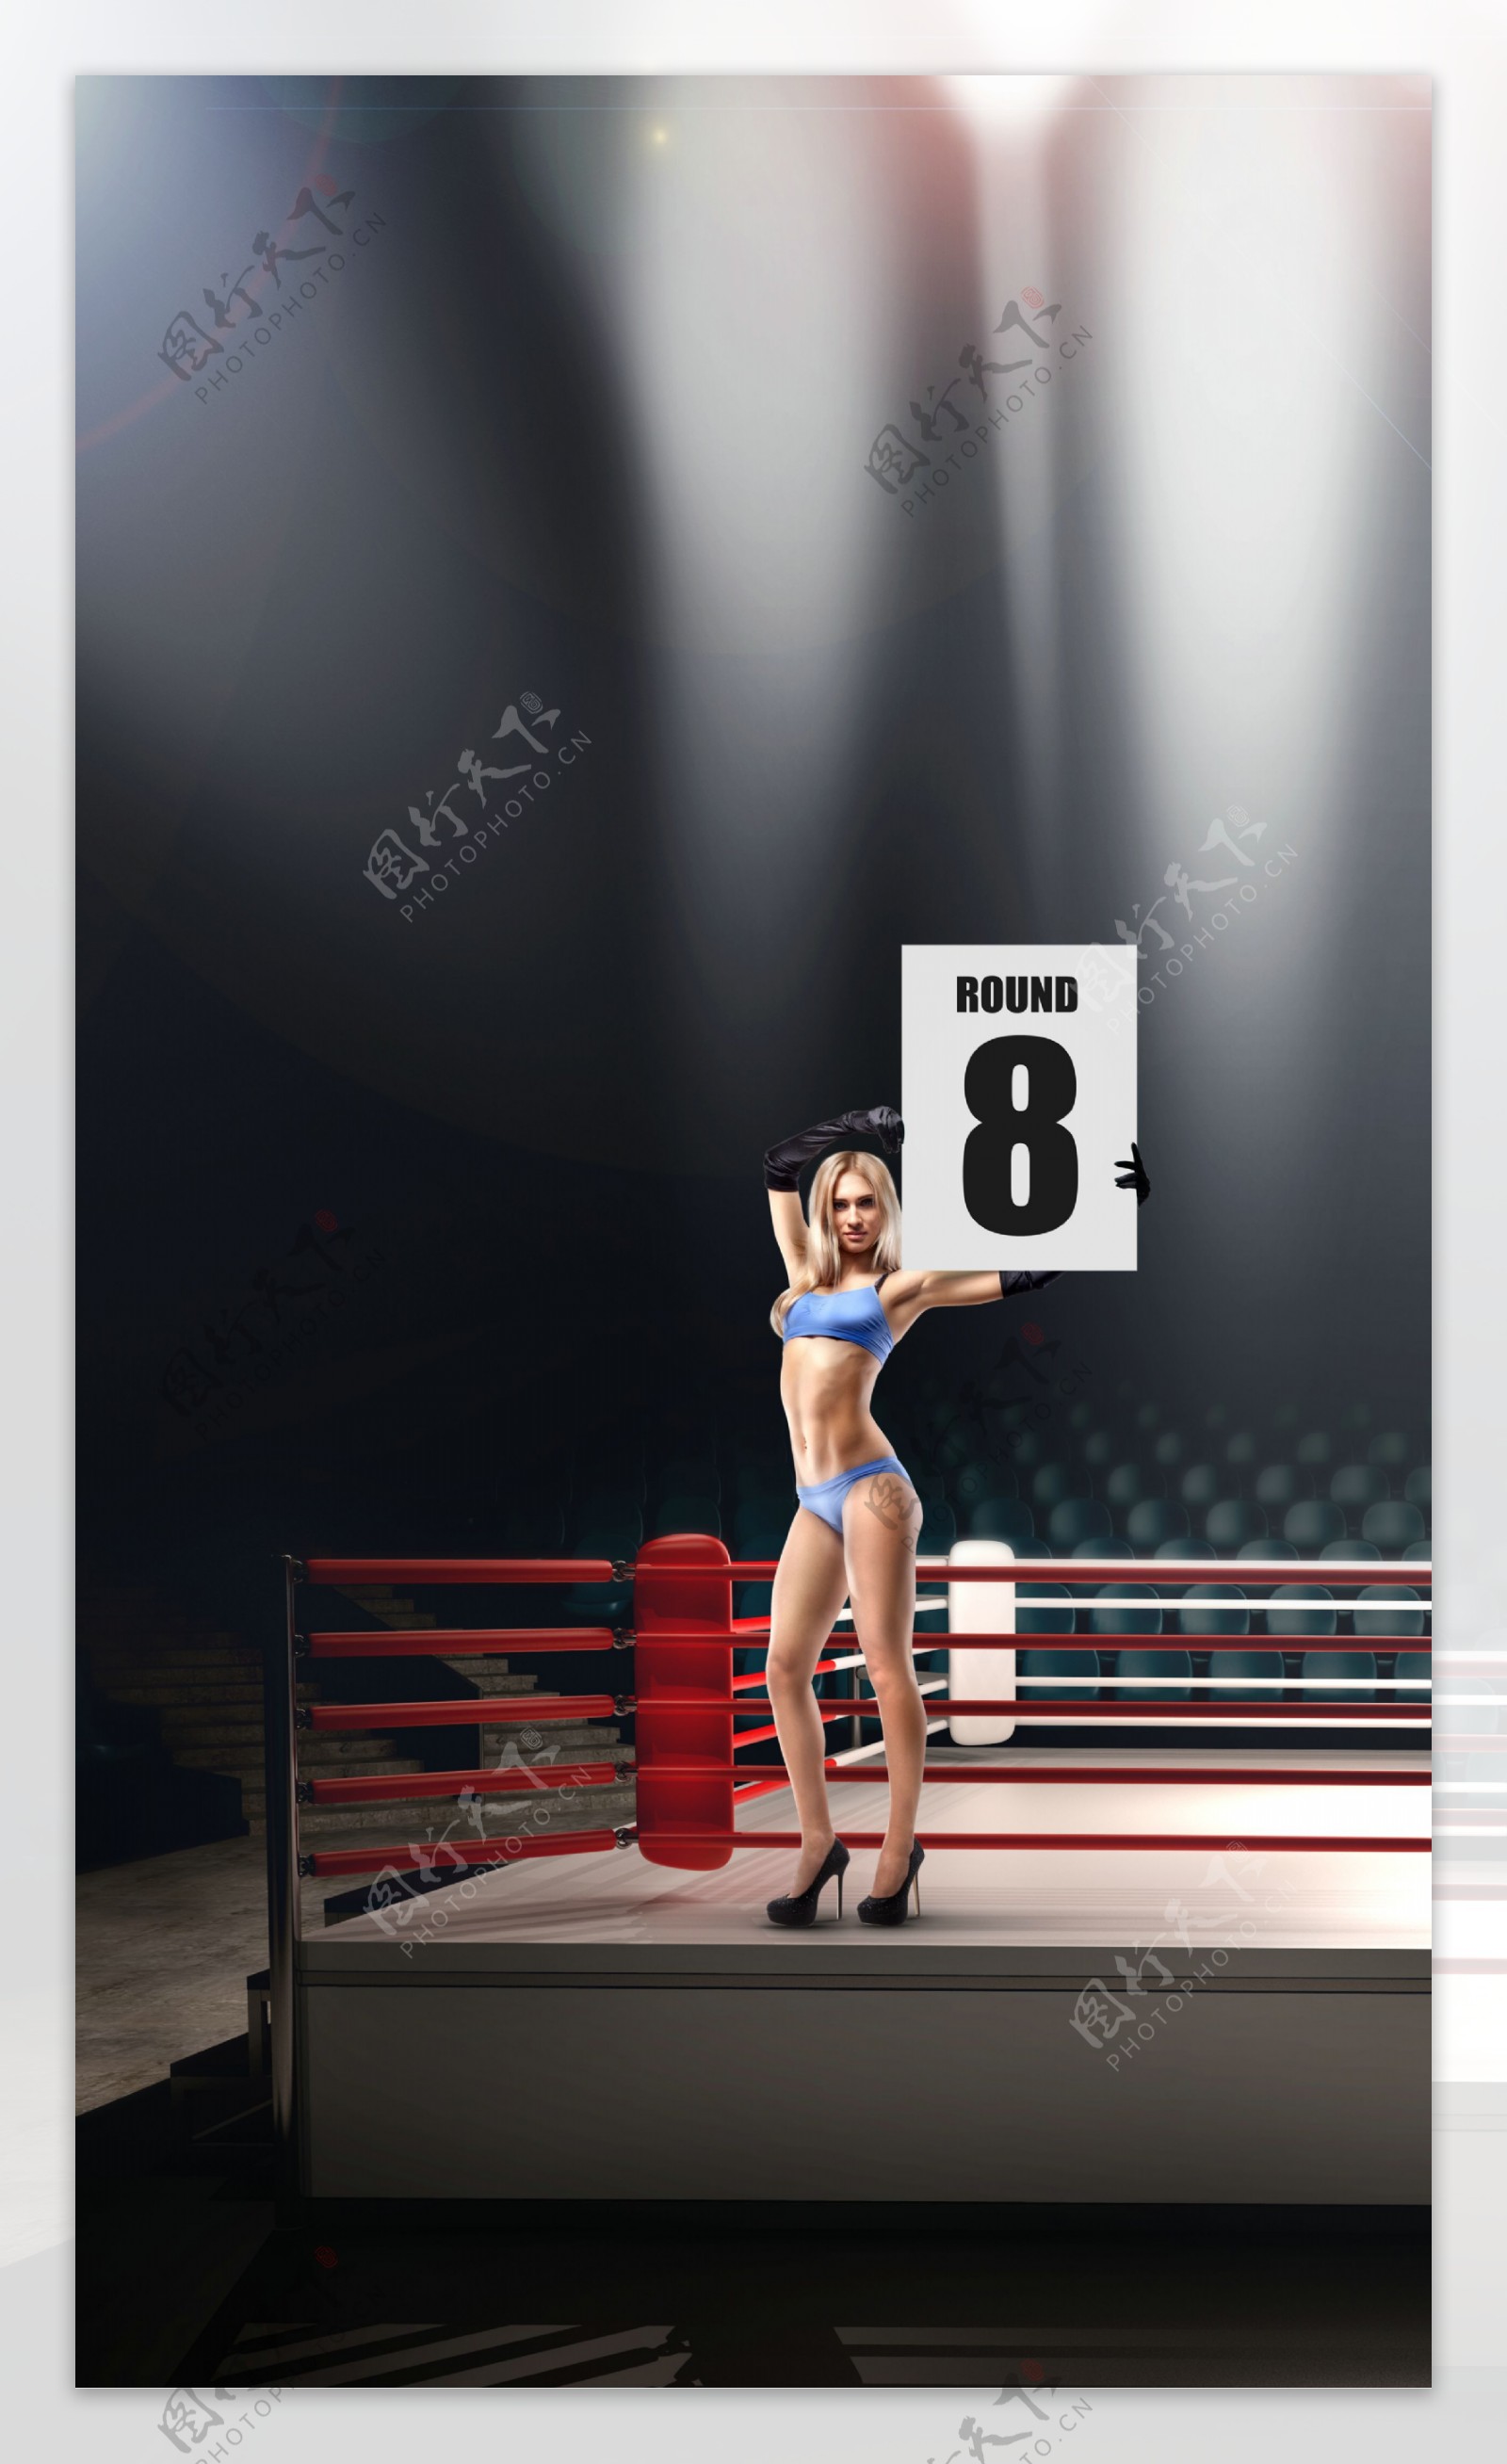 拳击台边缘上举着八号牌的美女图片